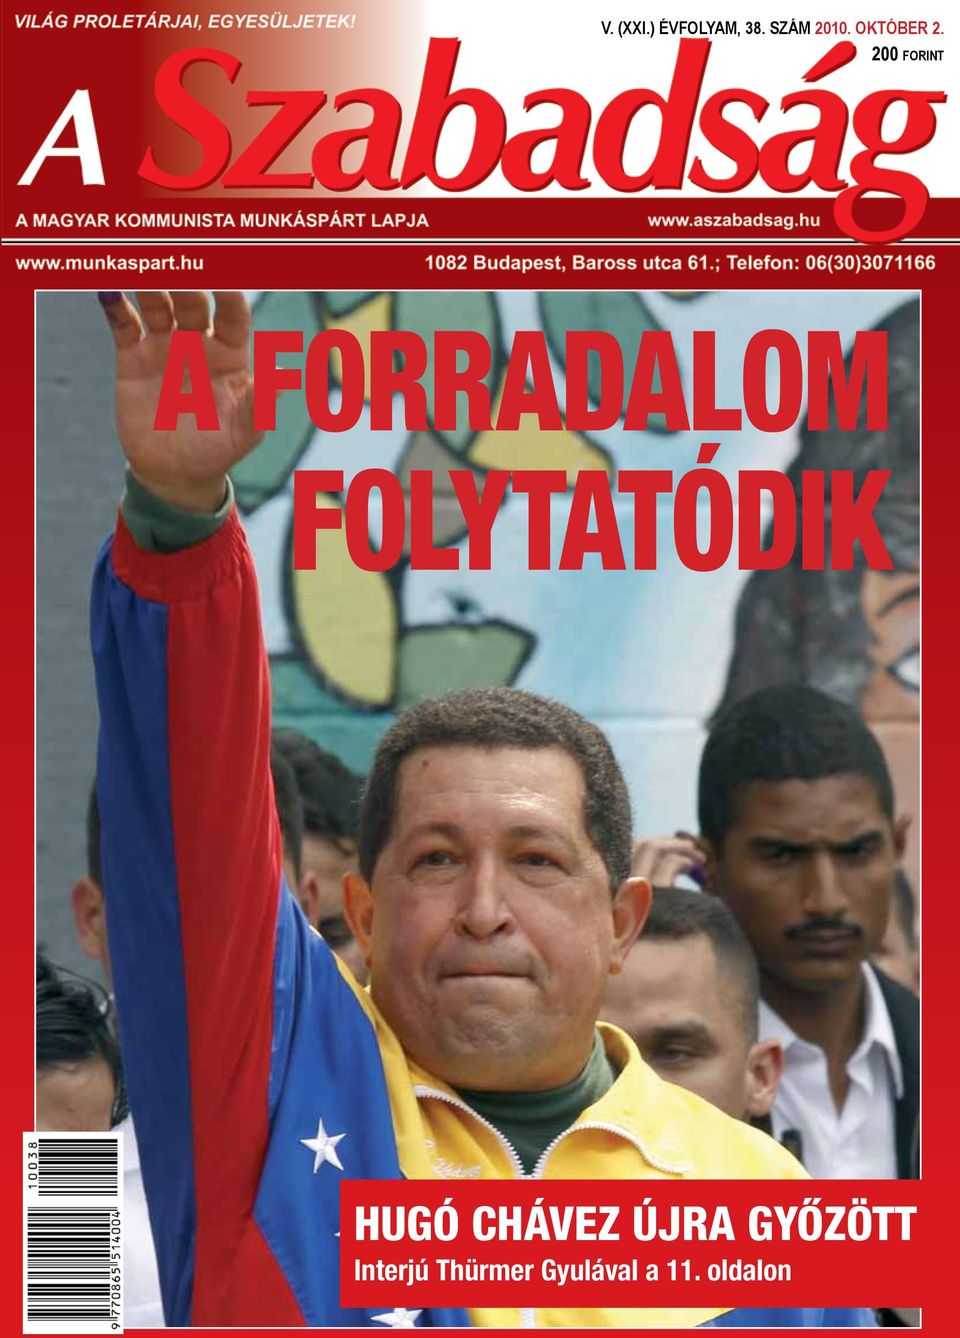 Chávez újra győzött Interjú